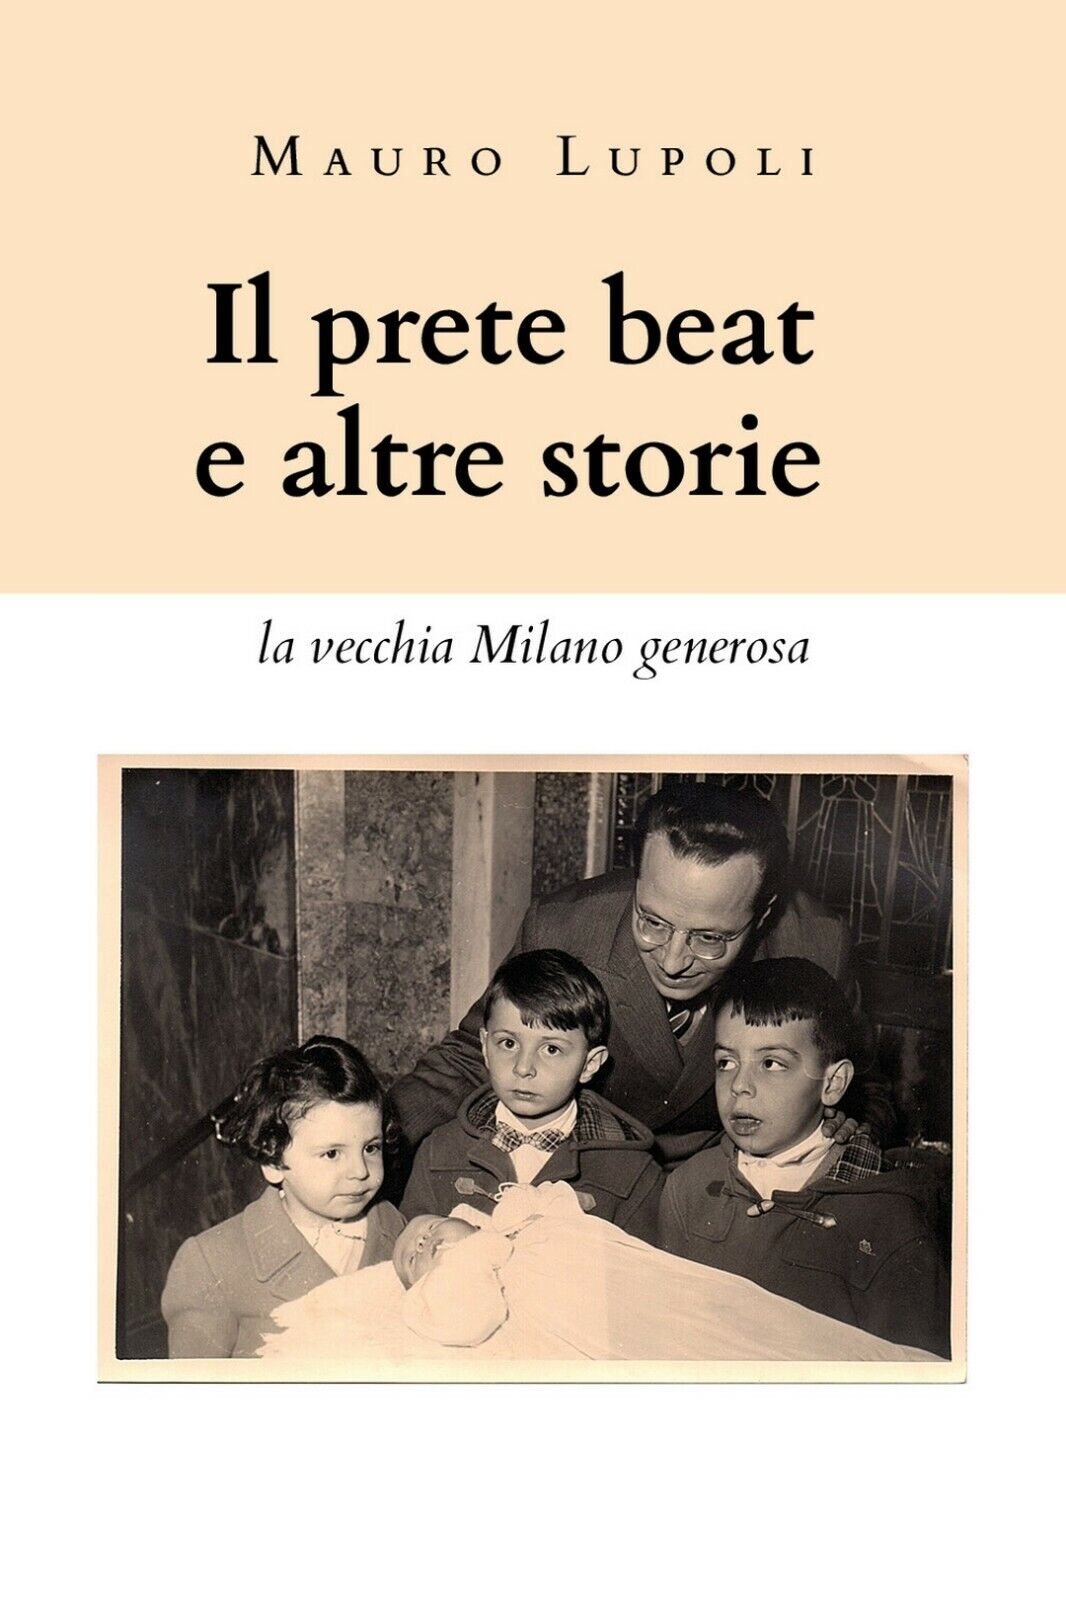 Il prete beat ed altre storie (la vecchia Milano generosa)  di Mauro Lupoli,  20